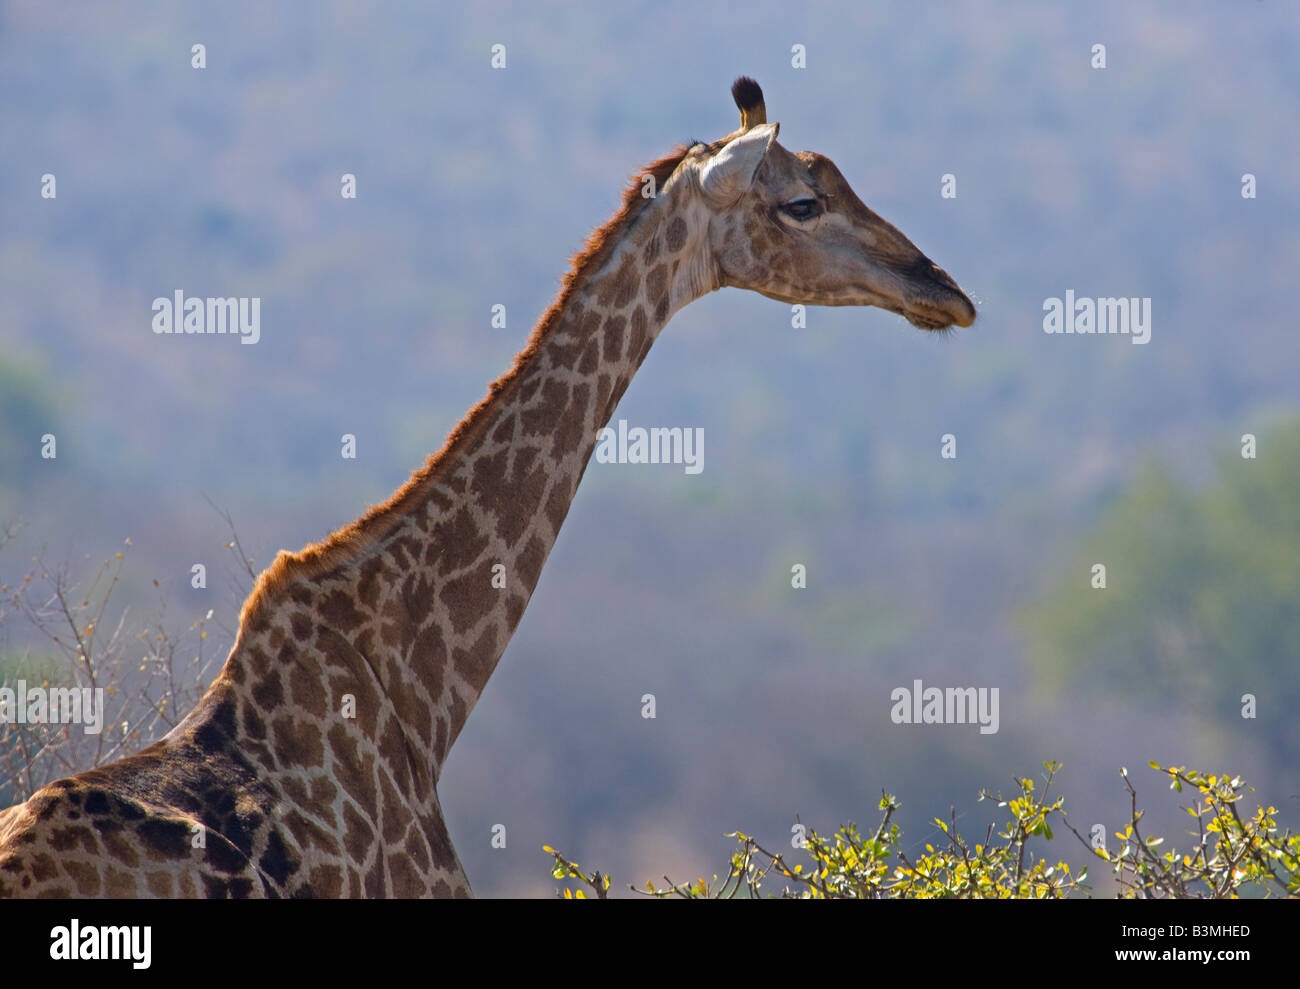 Girafe (Giraffa camelopardalis), le plus grand animal vivant à terre et la plus grande de l'Afrique du Sud, Kruger ruminants entre les arbres Banque D'Images